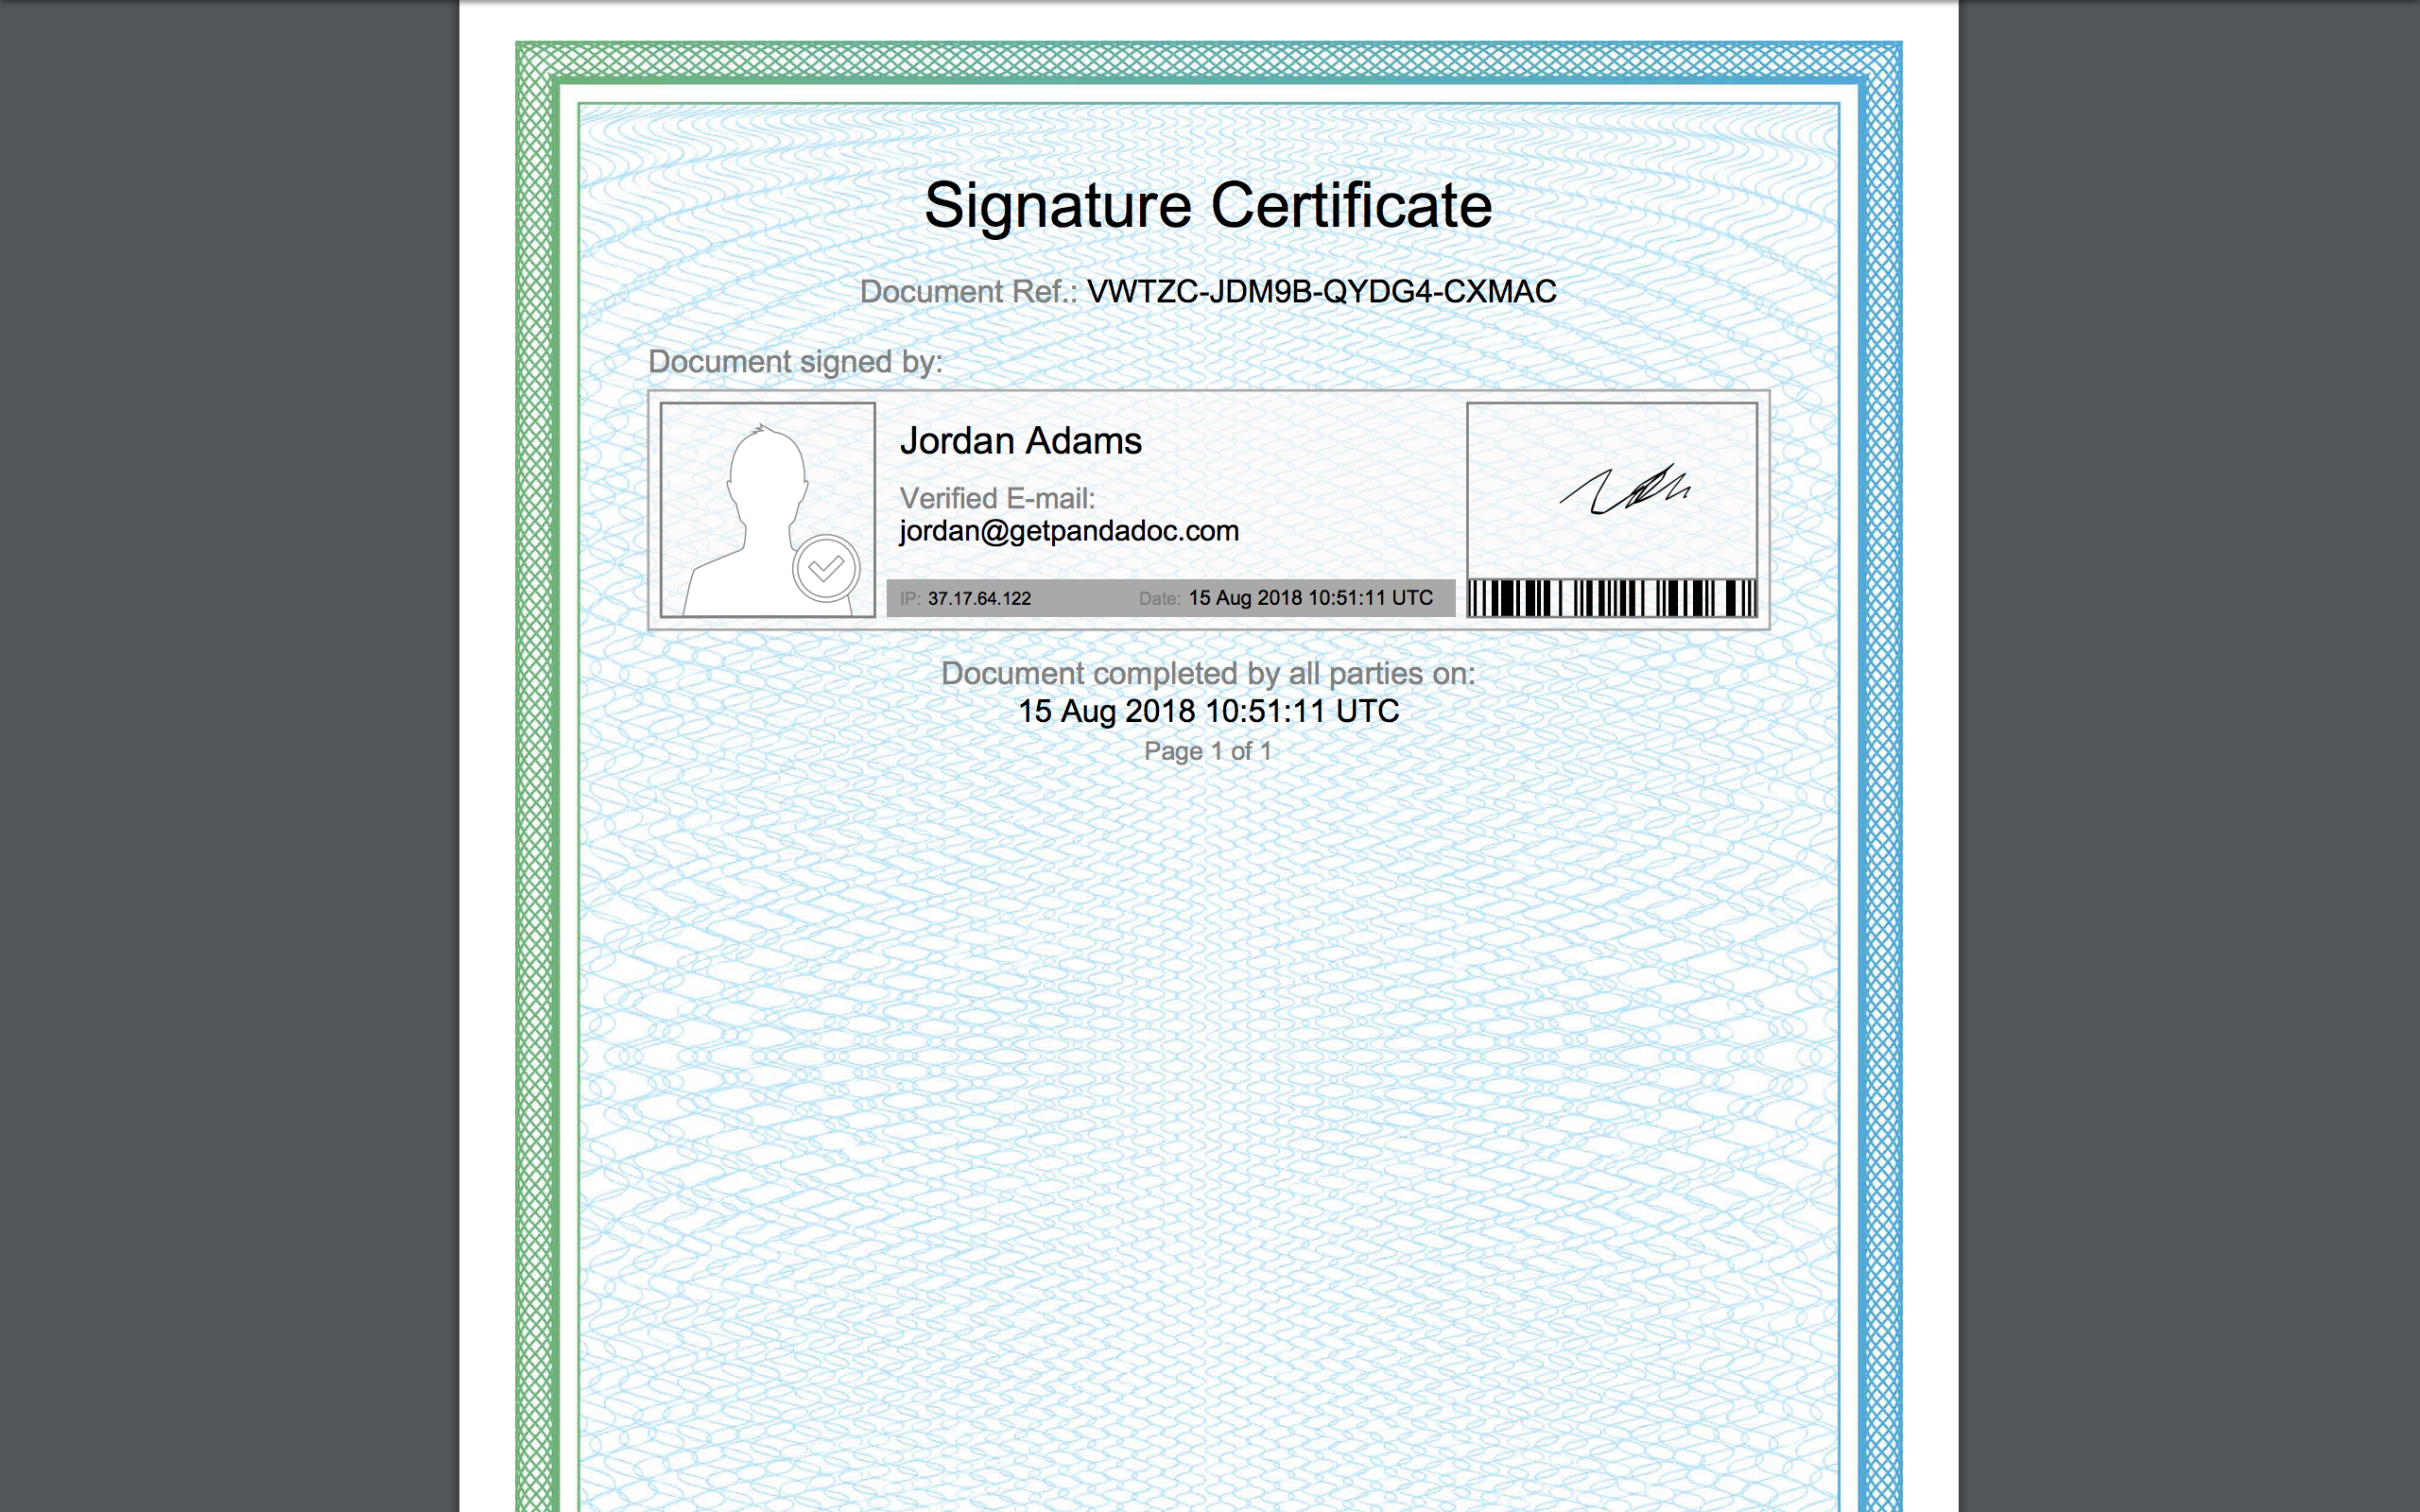 signature_certificate_signature.png